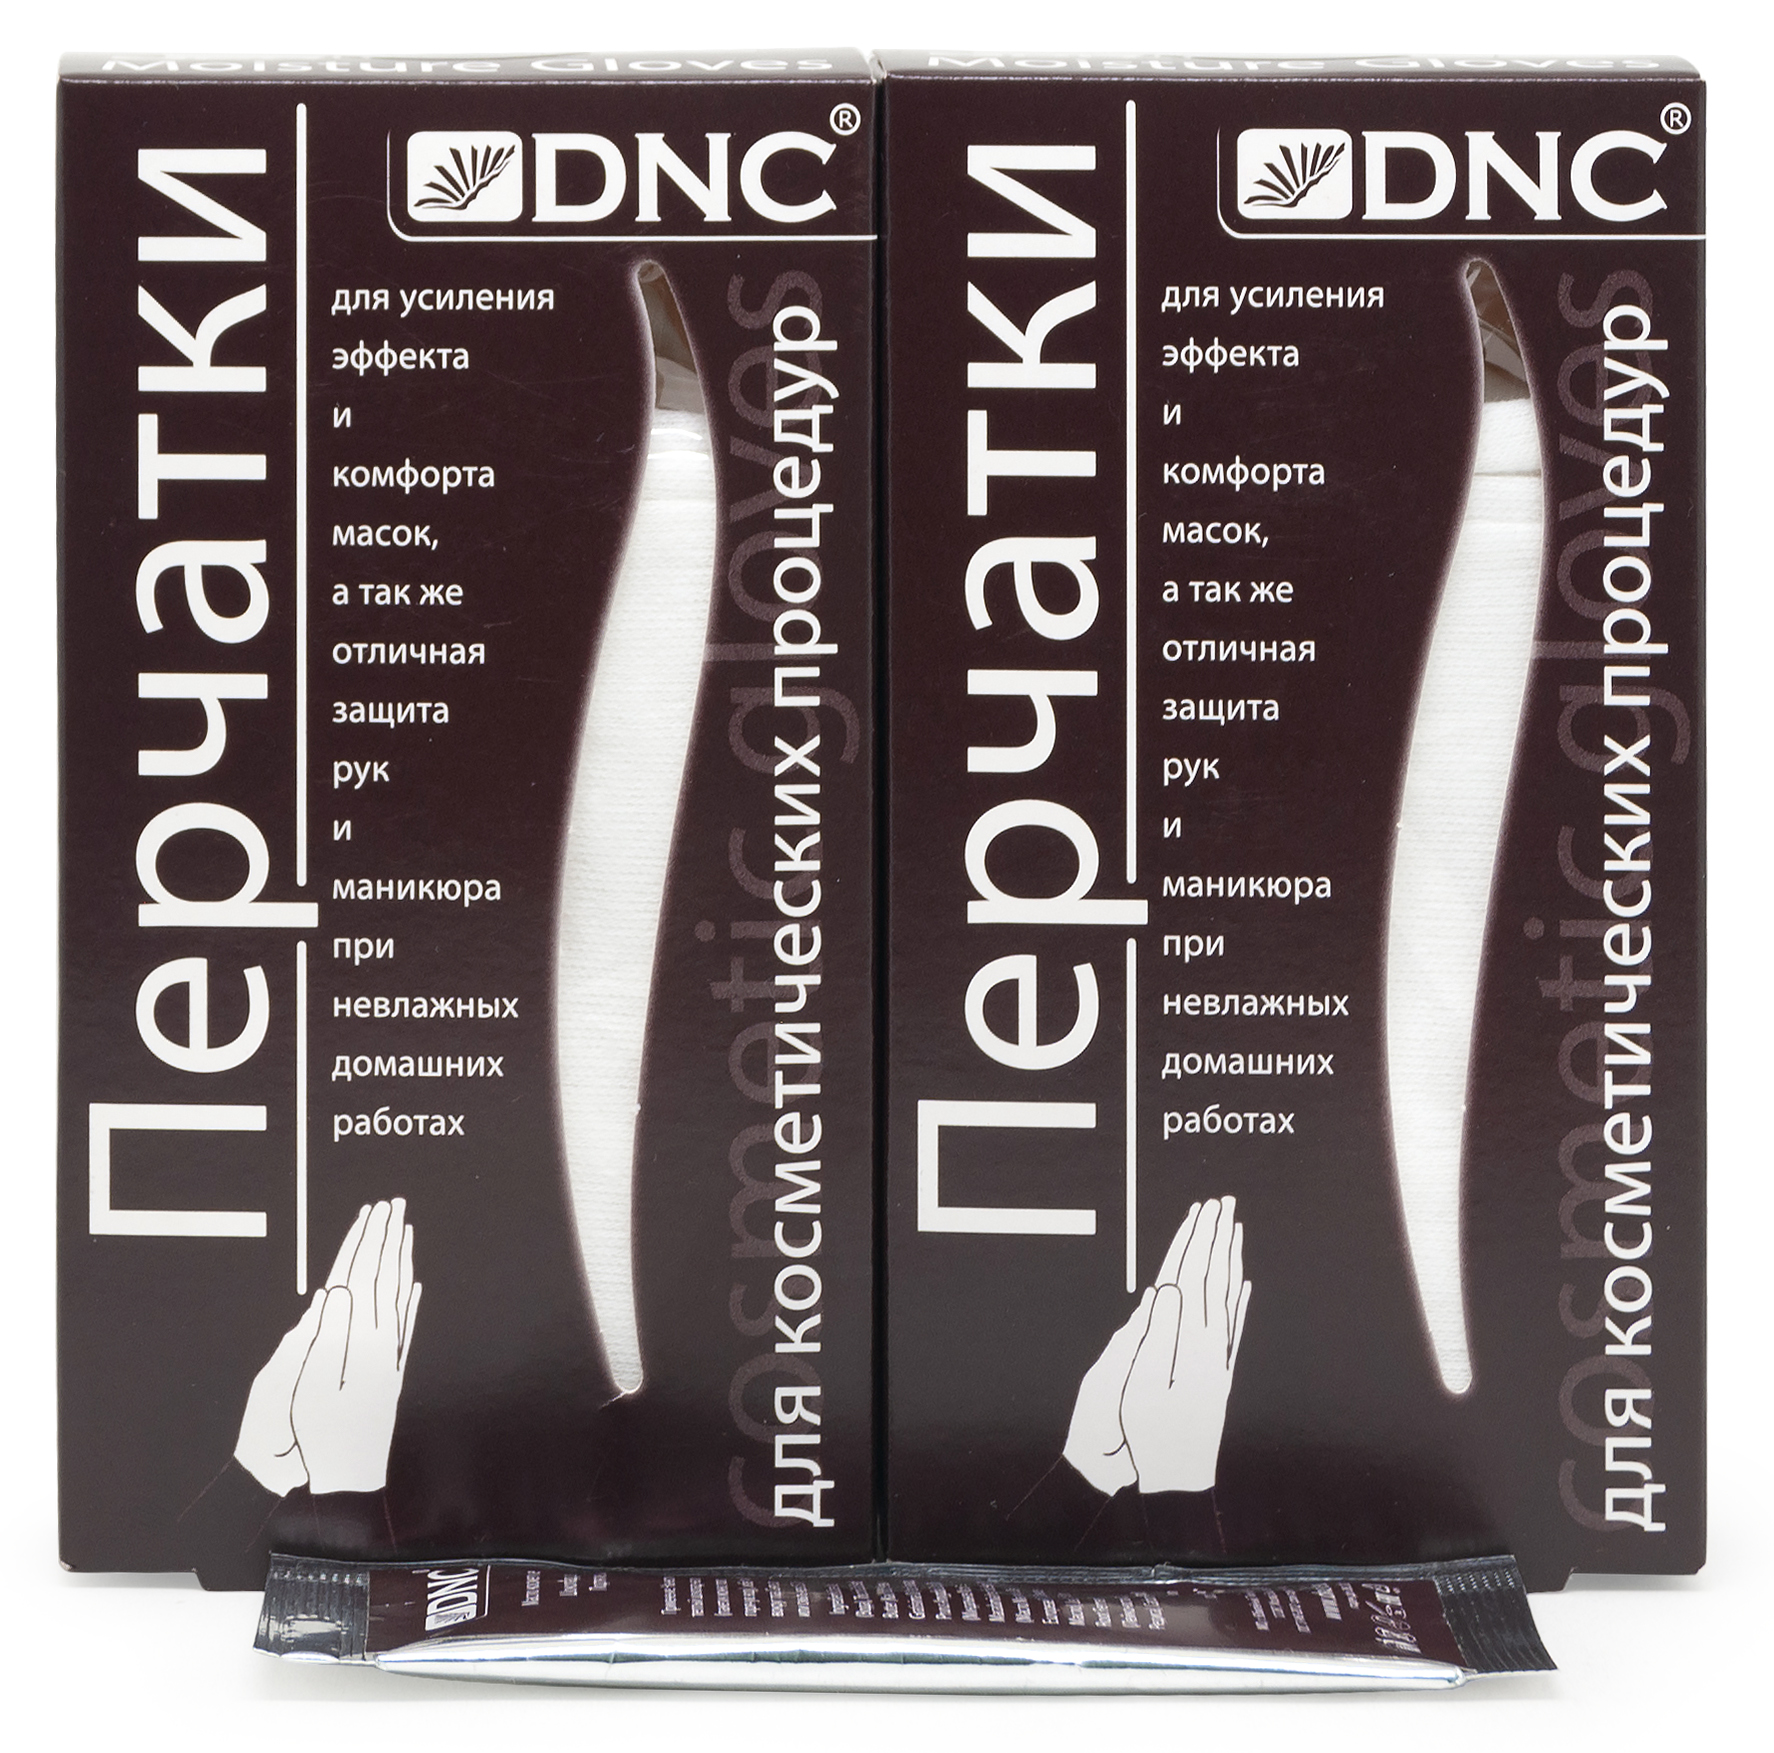 Набор: DNC Перчатки для косметических процедур 2 шт + Подарок Шоколад для лица 7.5 мл